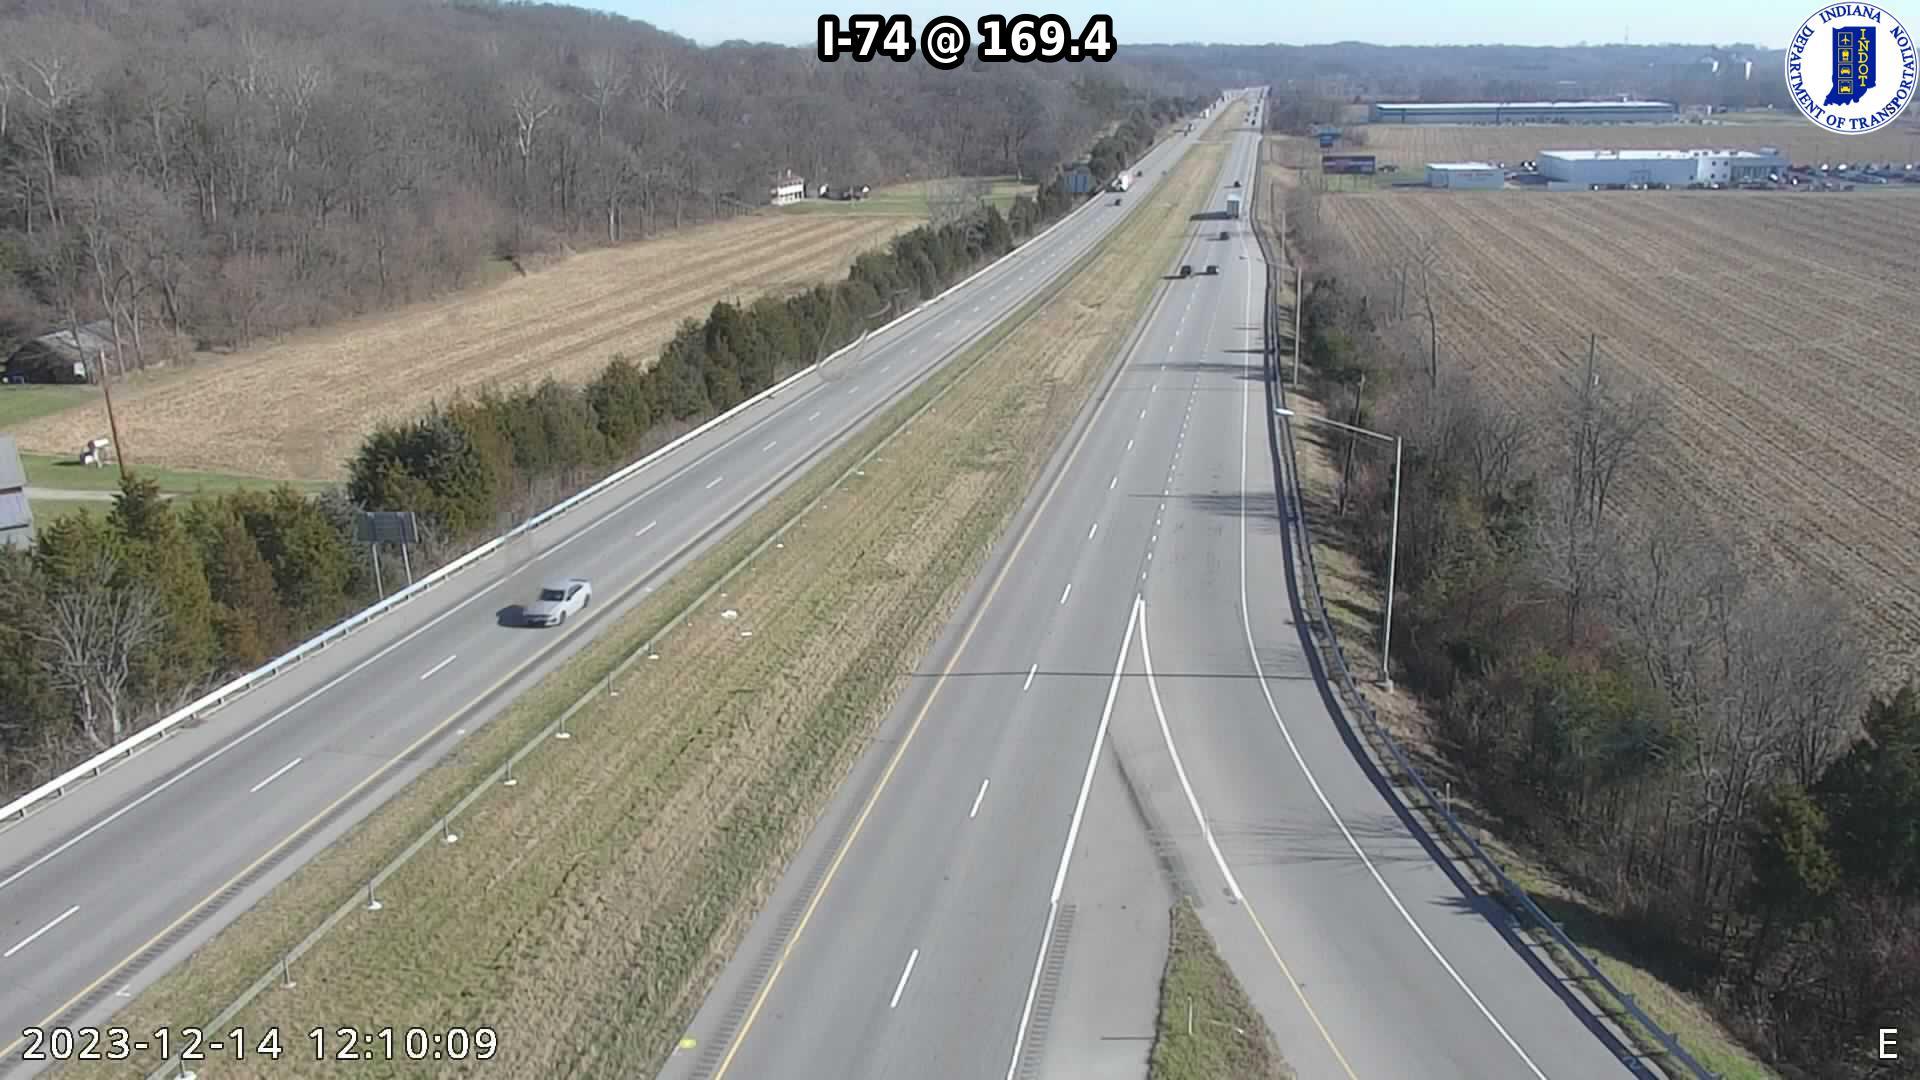 Braysville: I-74: I-74 @ 169.4 Traffic Camera